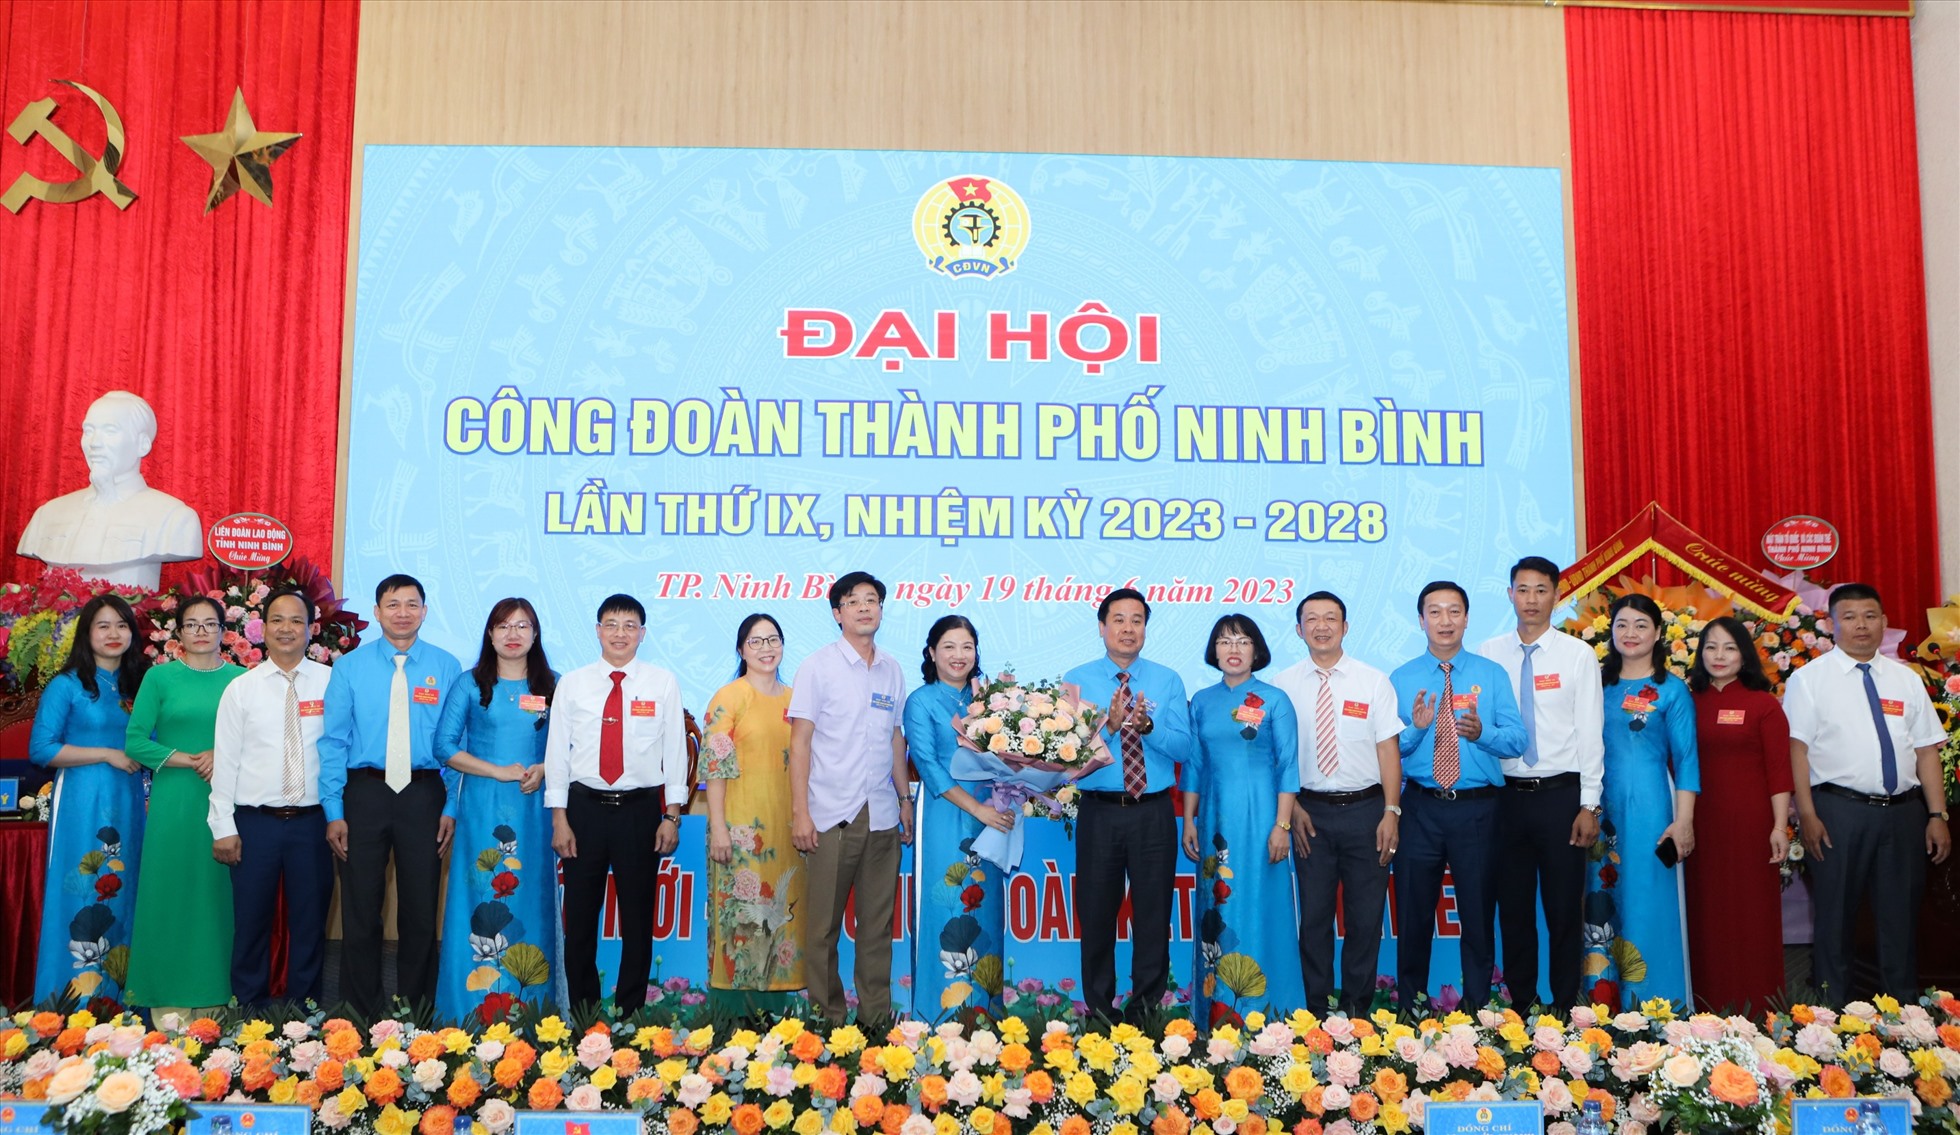 Các đại biểu tặng hoa chúc mừng Ban Chấp hành Công đoàn thành phố Ninh Bình khóa mới. Ảnh: Diệu Anh